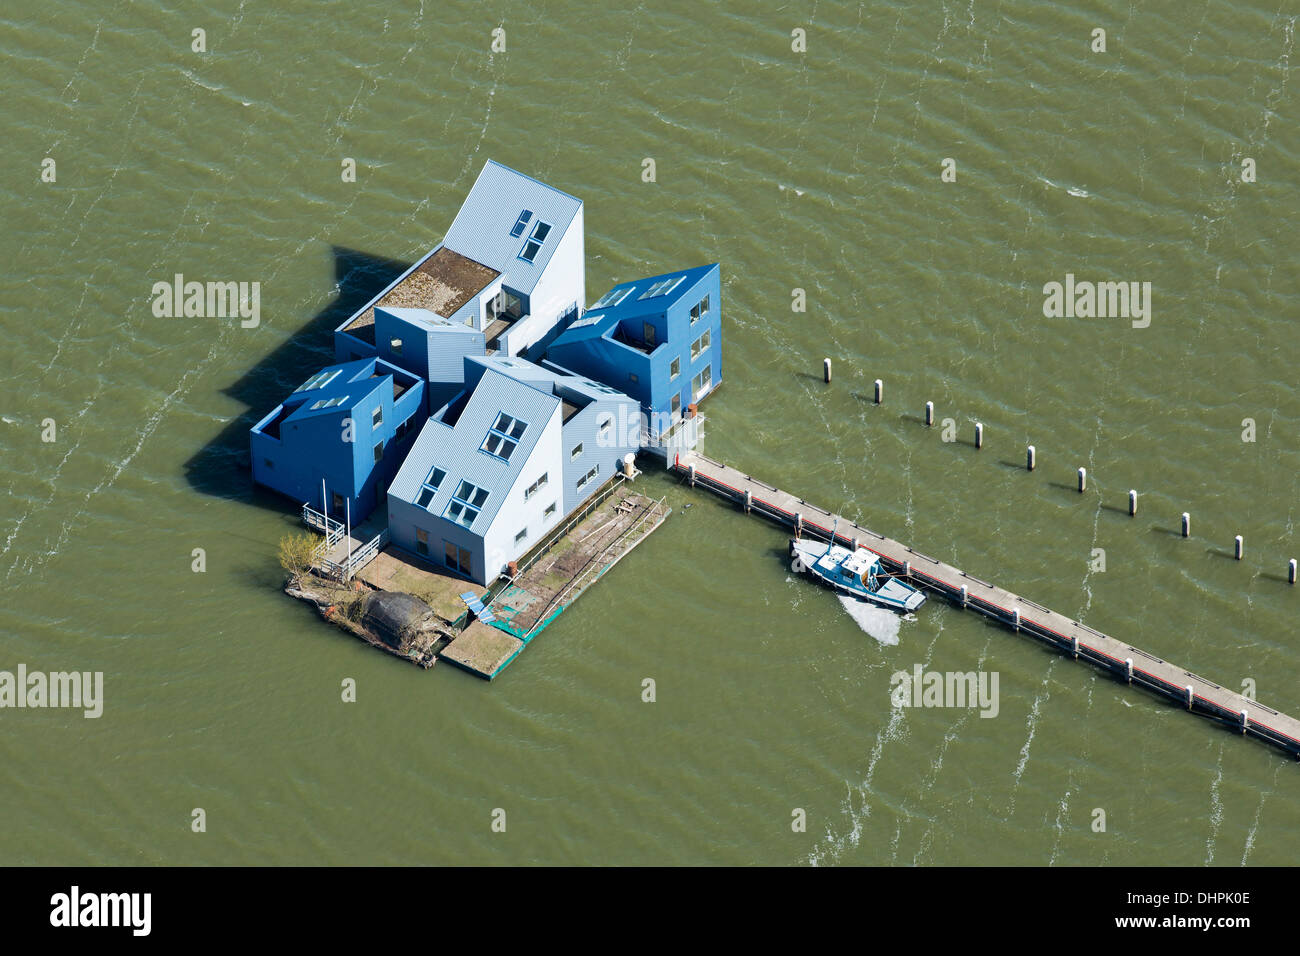 Niederlande, Almere, Floatinglife. Temporäre schwimmende lebt und arbeitet Villen auf dem Wasser (See Ijsselmeer genannt). Luft. Stockfoto